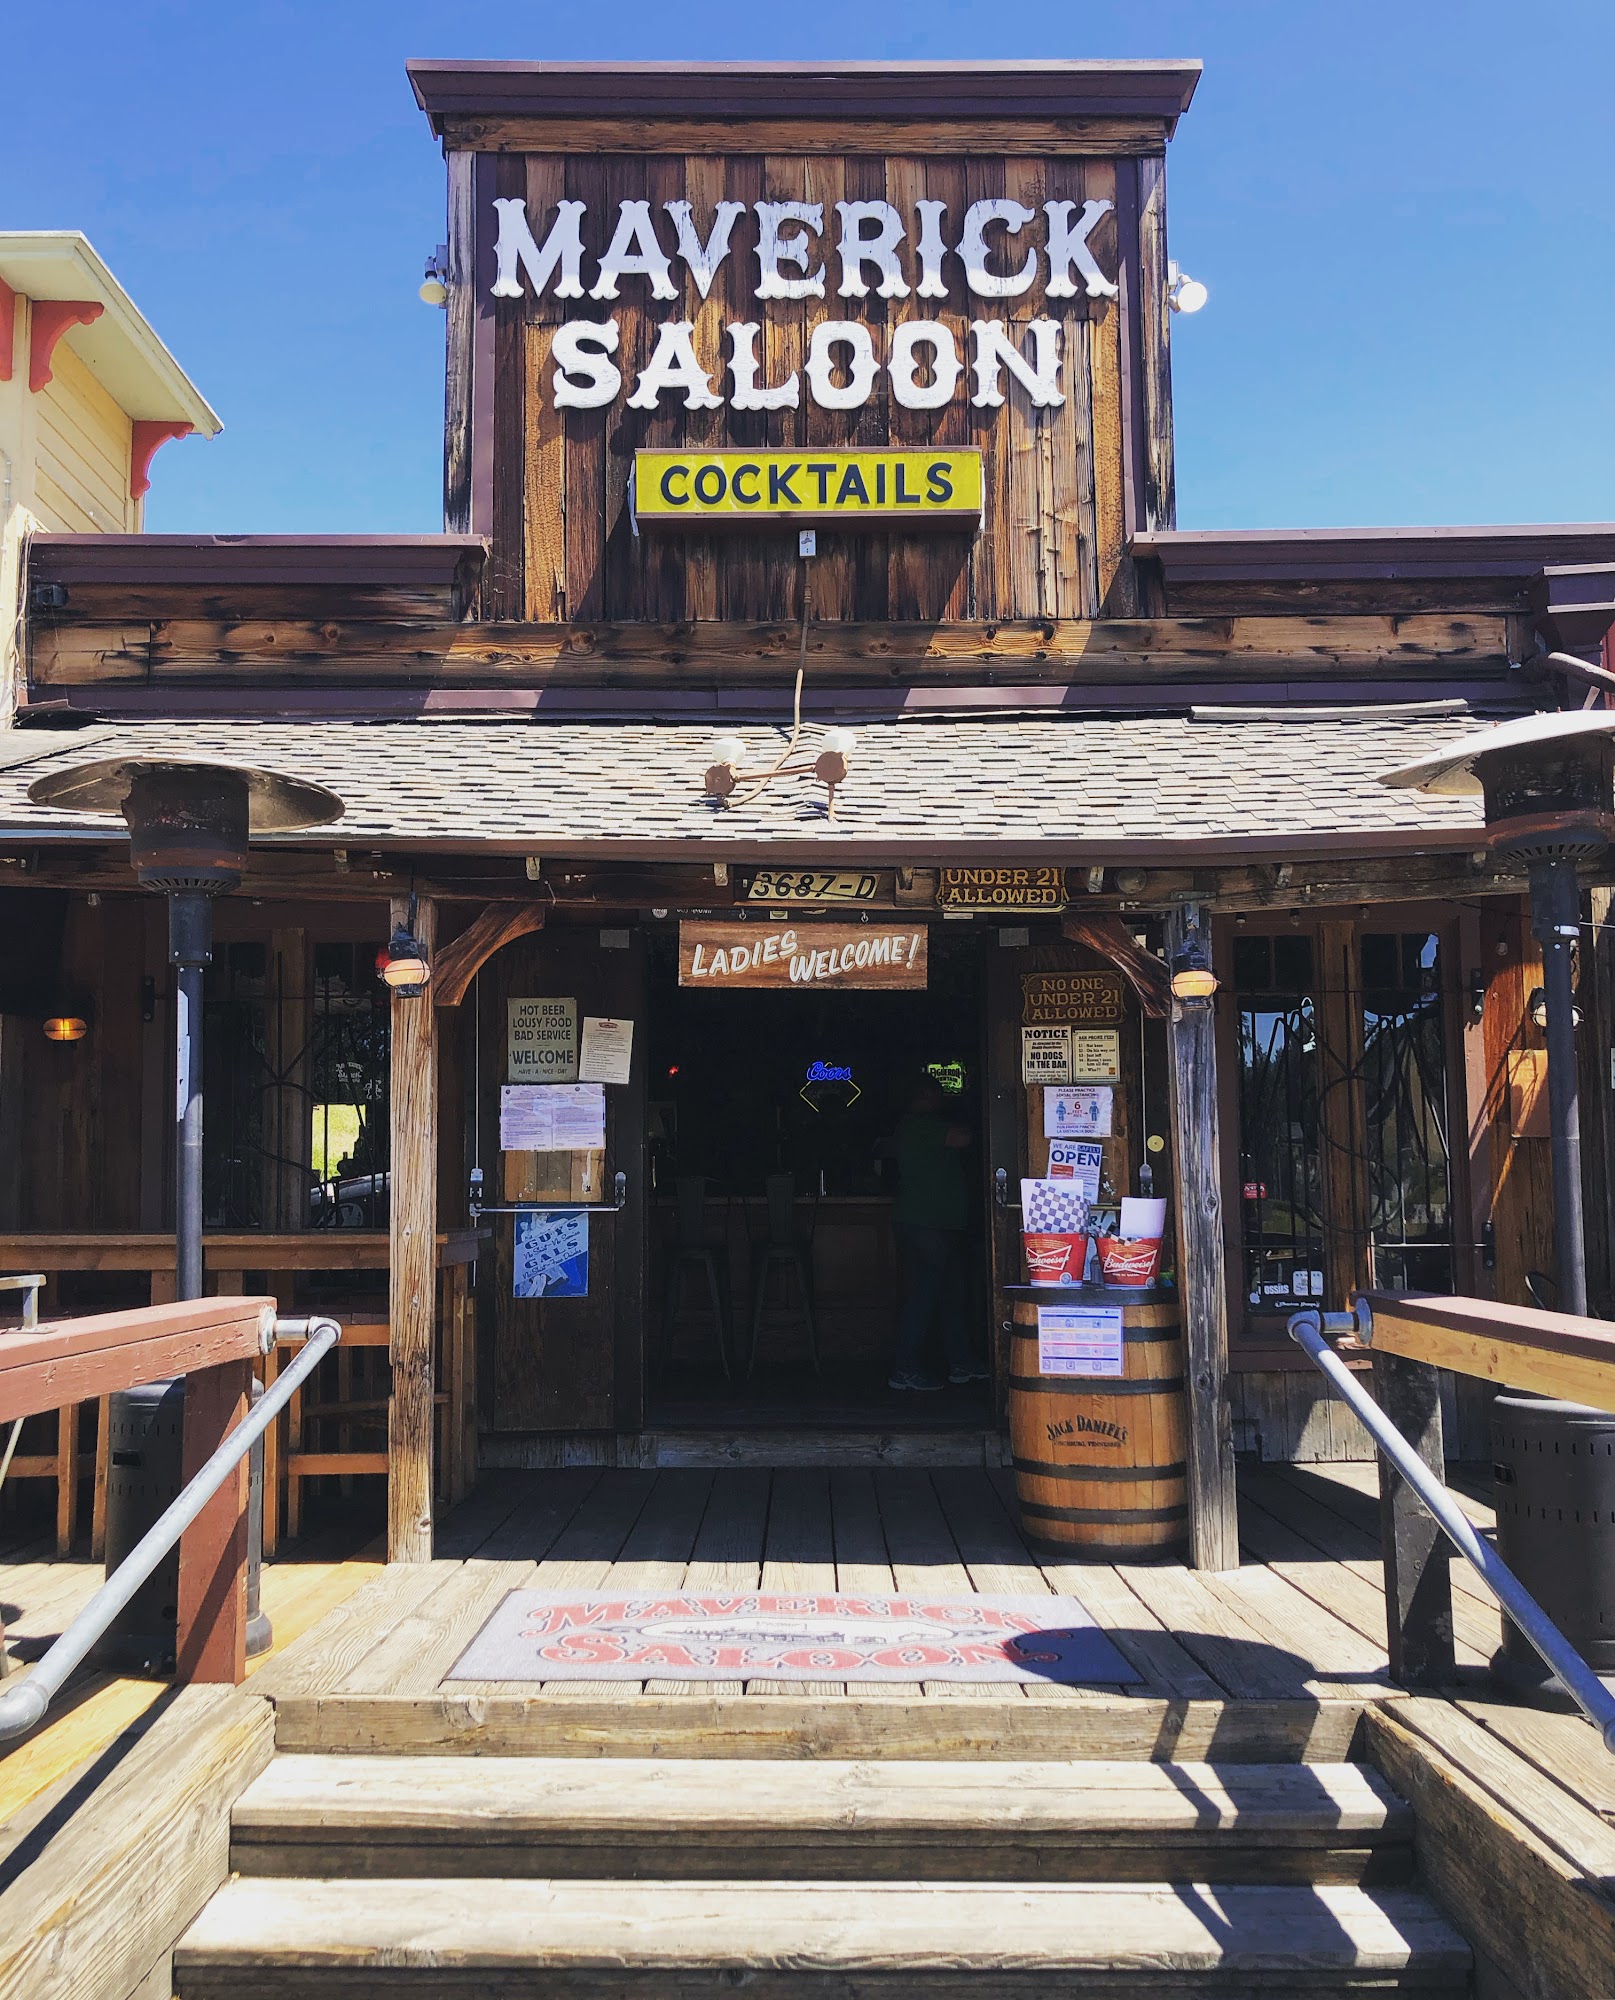 Maverick Saloon